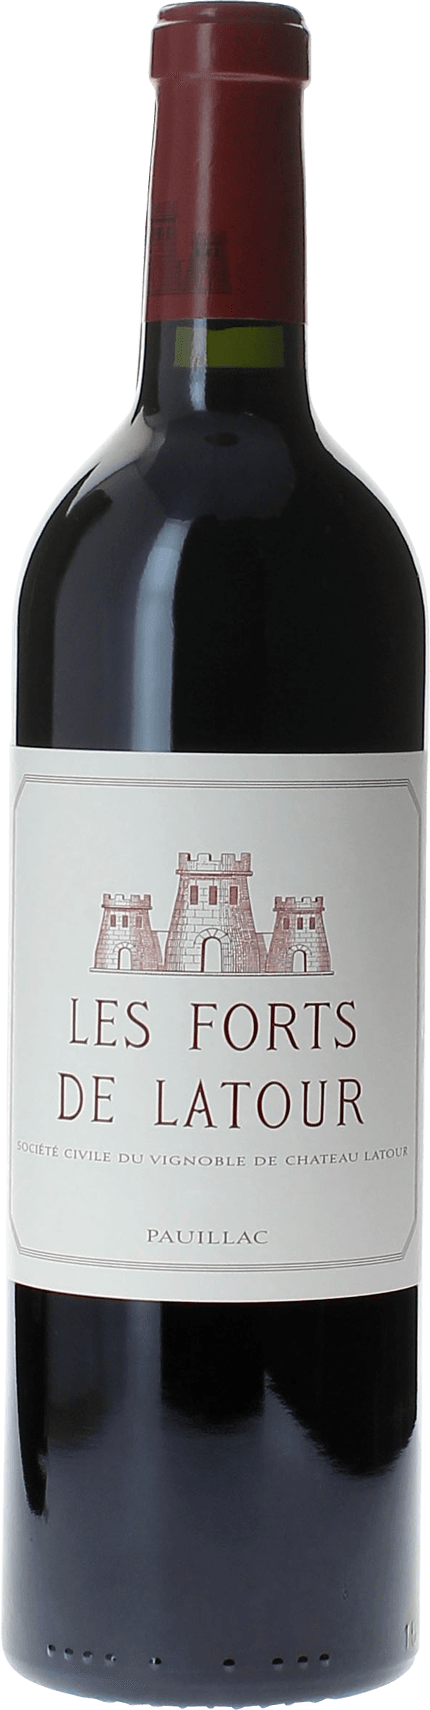 Les forts de latour 1986 2me vin de LATOUR Pauillac, Bordeaux rouge